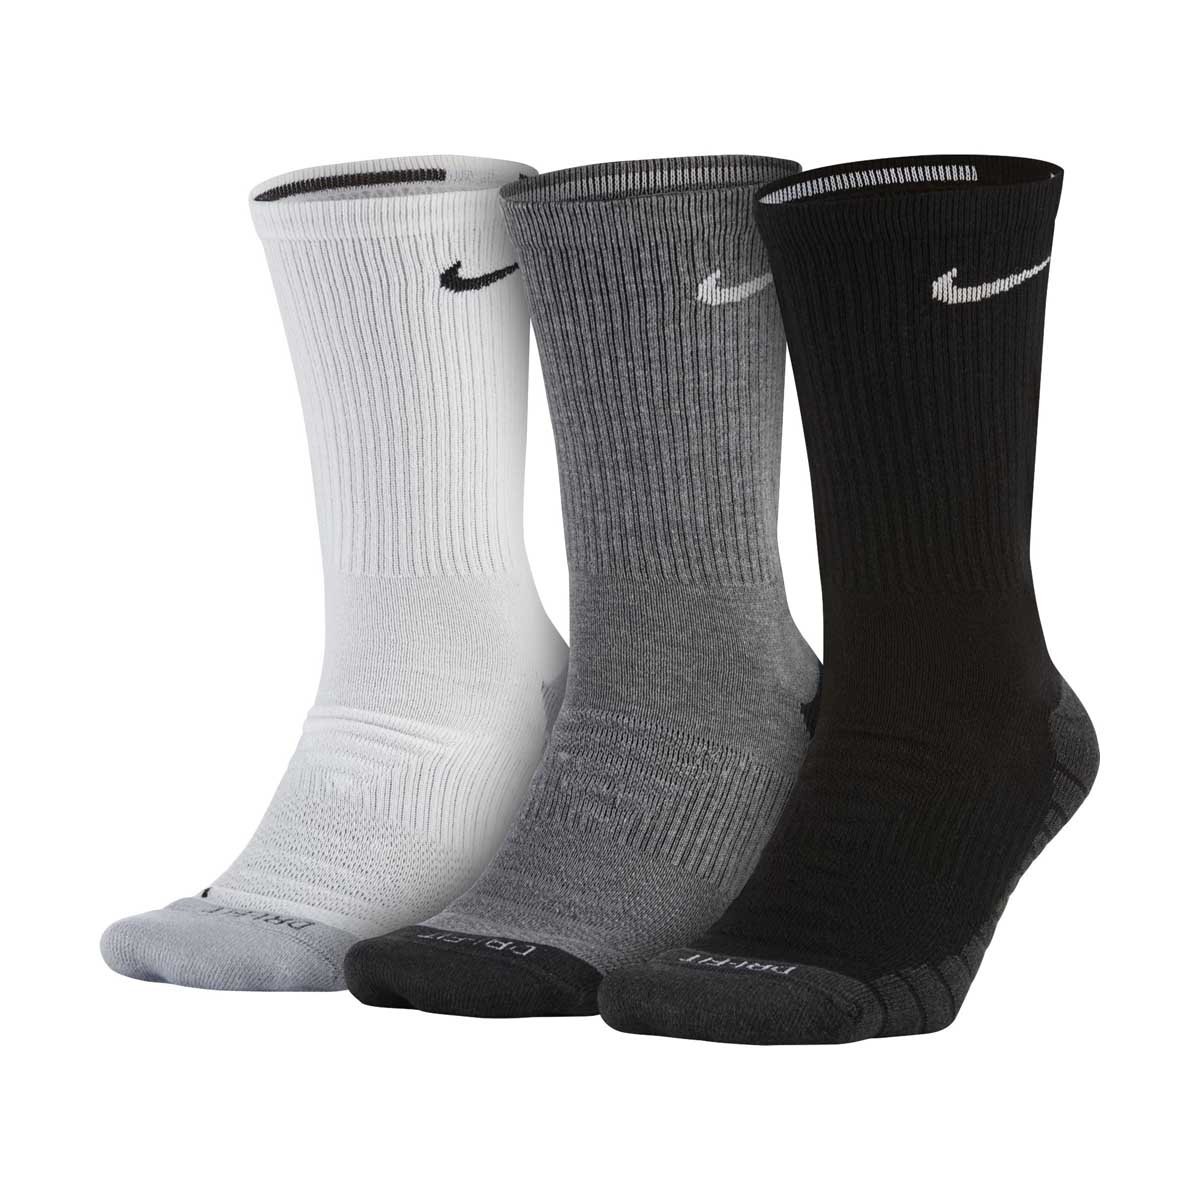 Nike Everyday Max Cushioned Training Crew Socks (3 Pairs) - Large